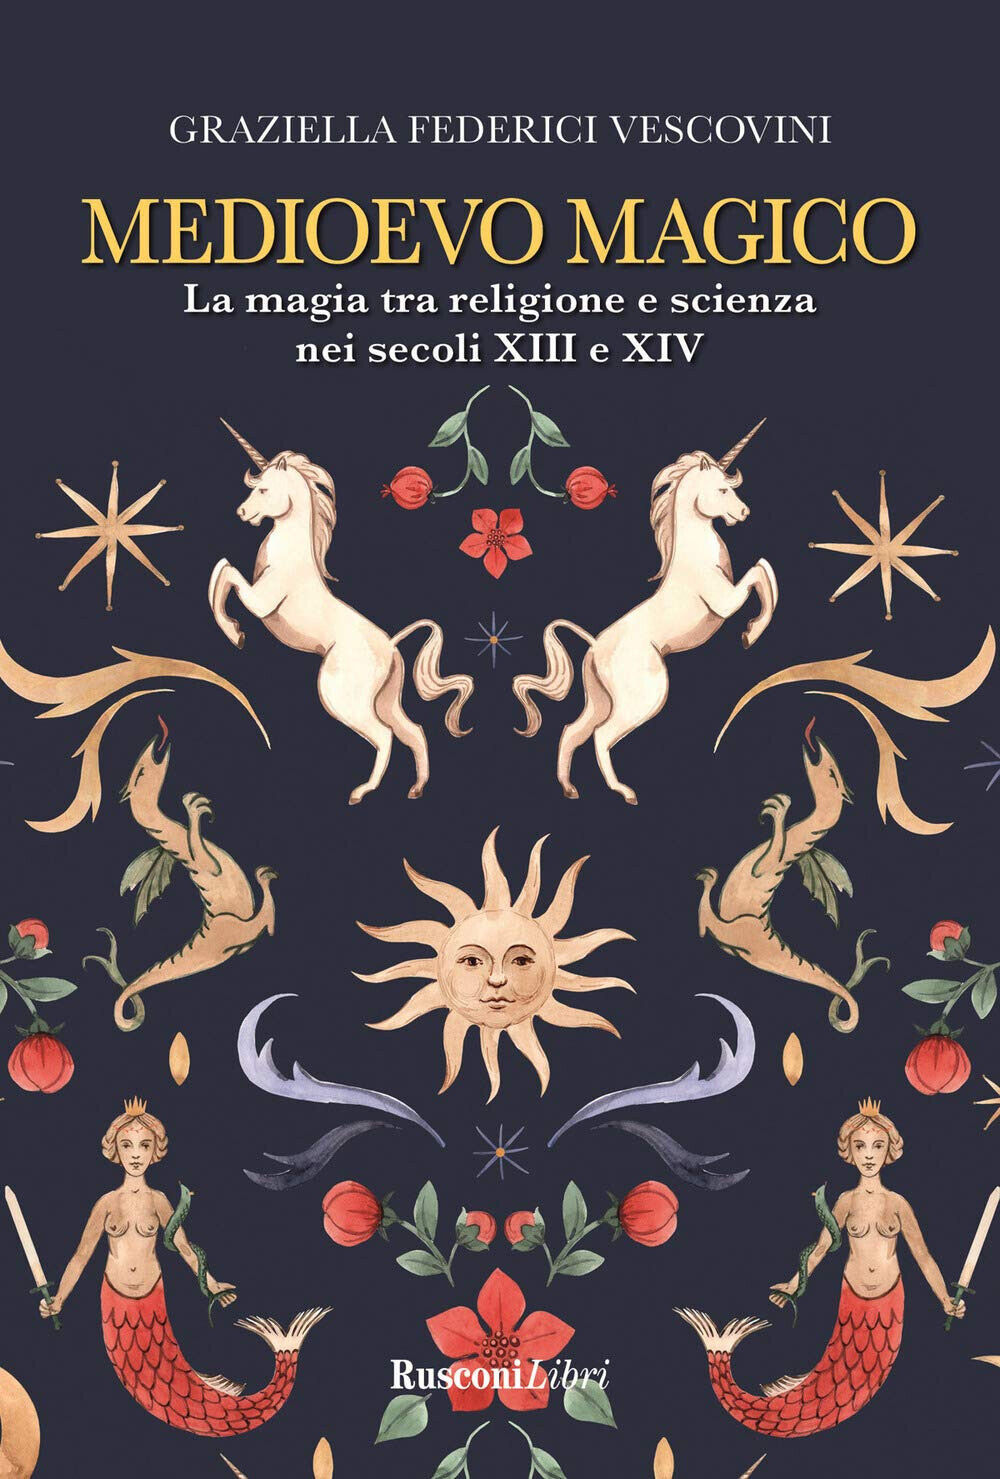 Medioevo magico - Graziella Federici Vescovini - Rusconi, 2021